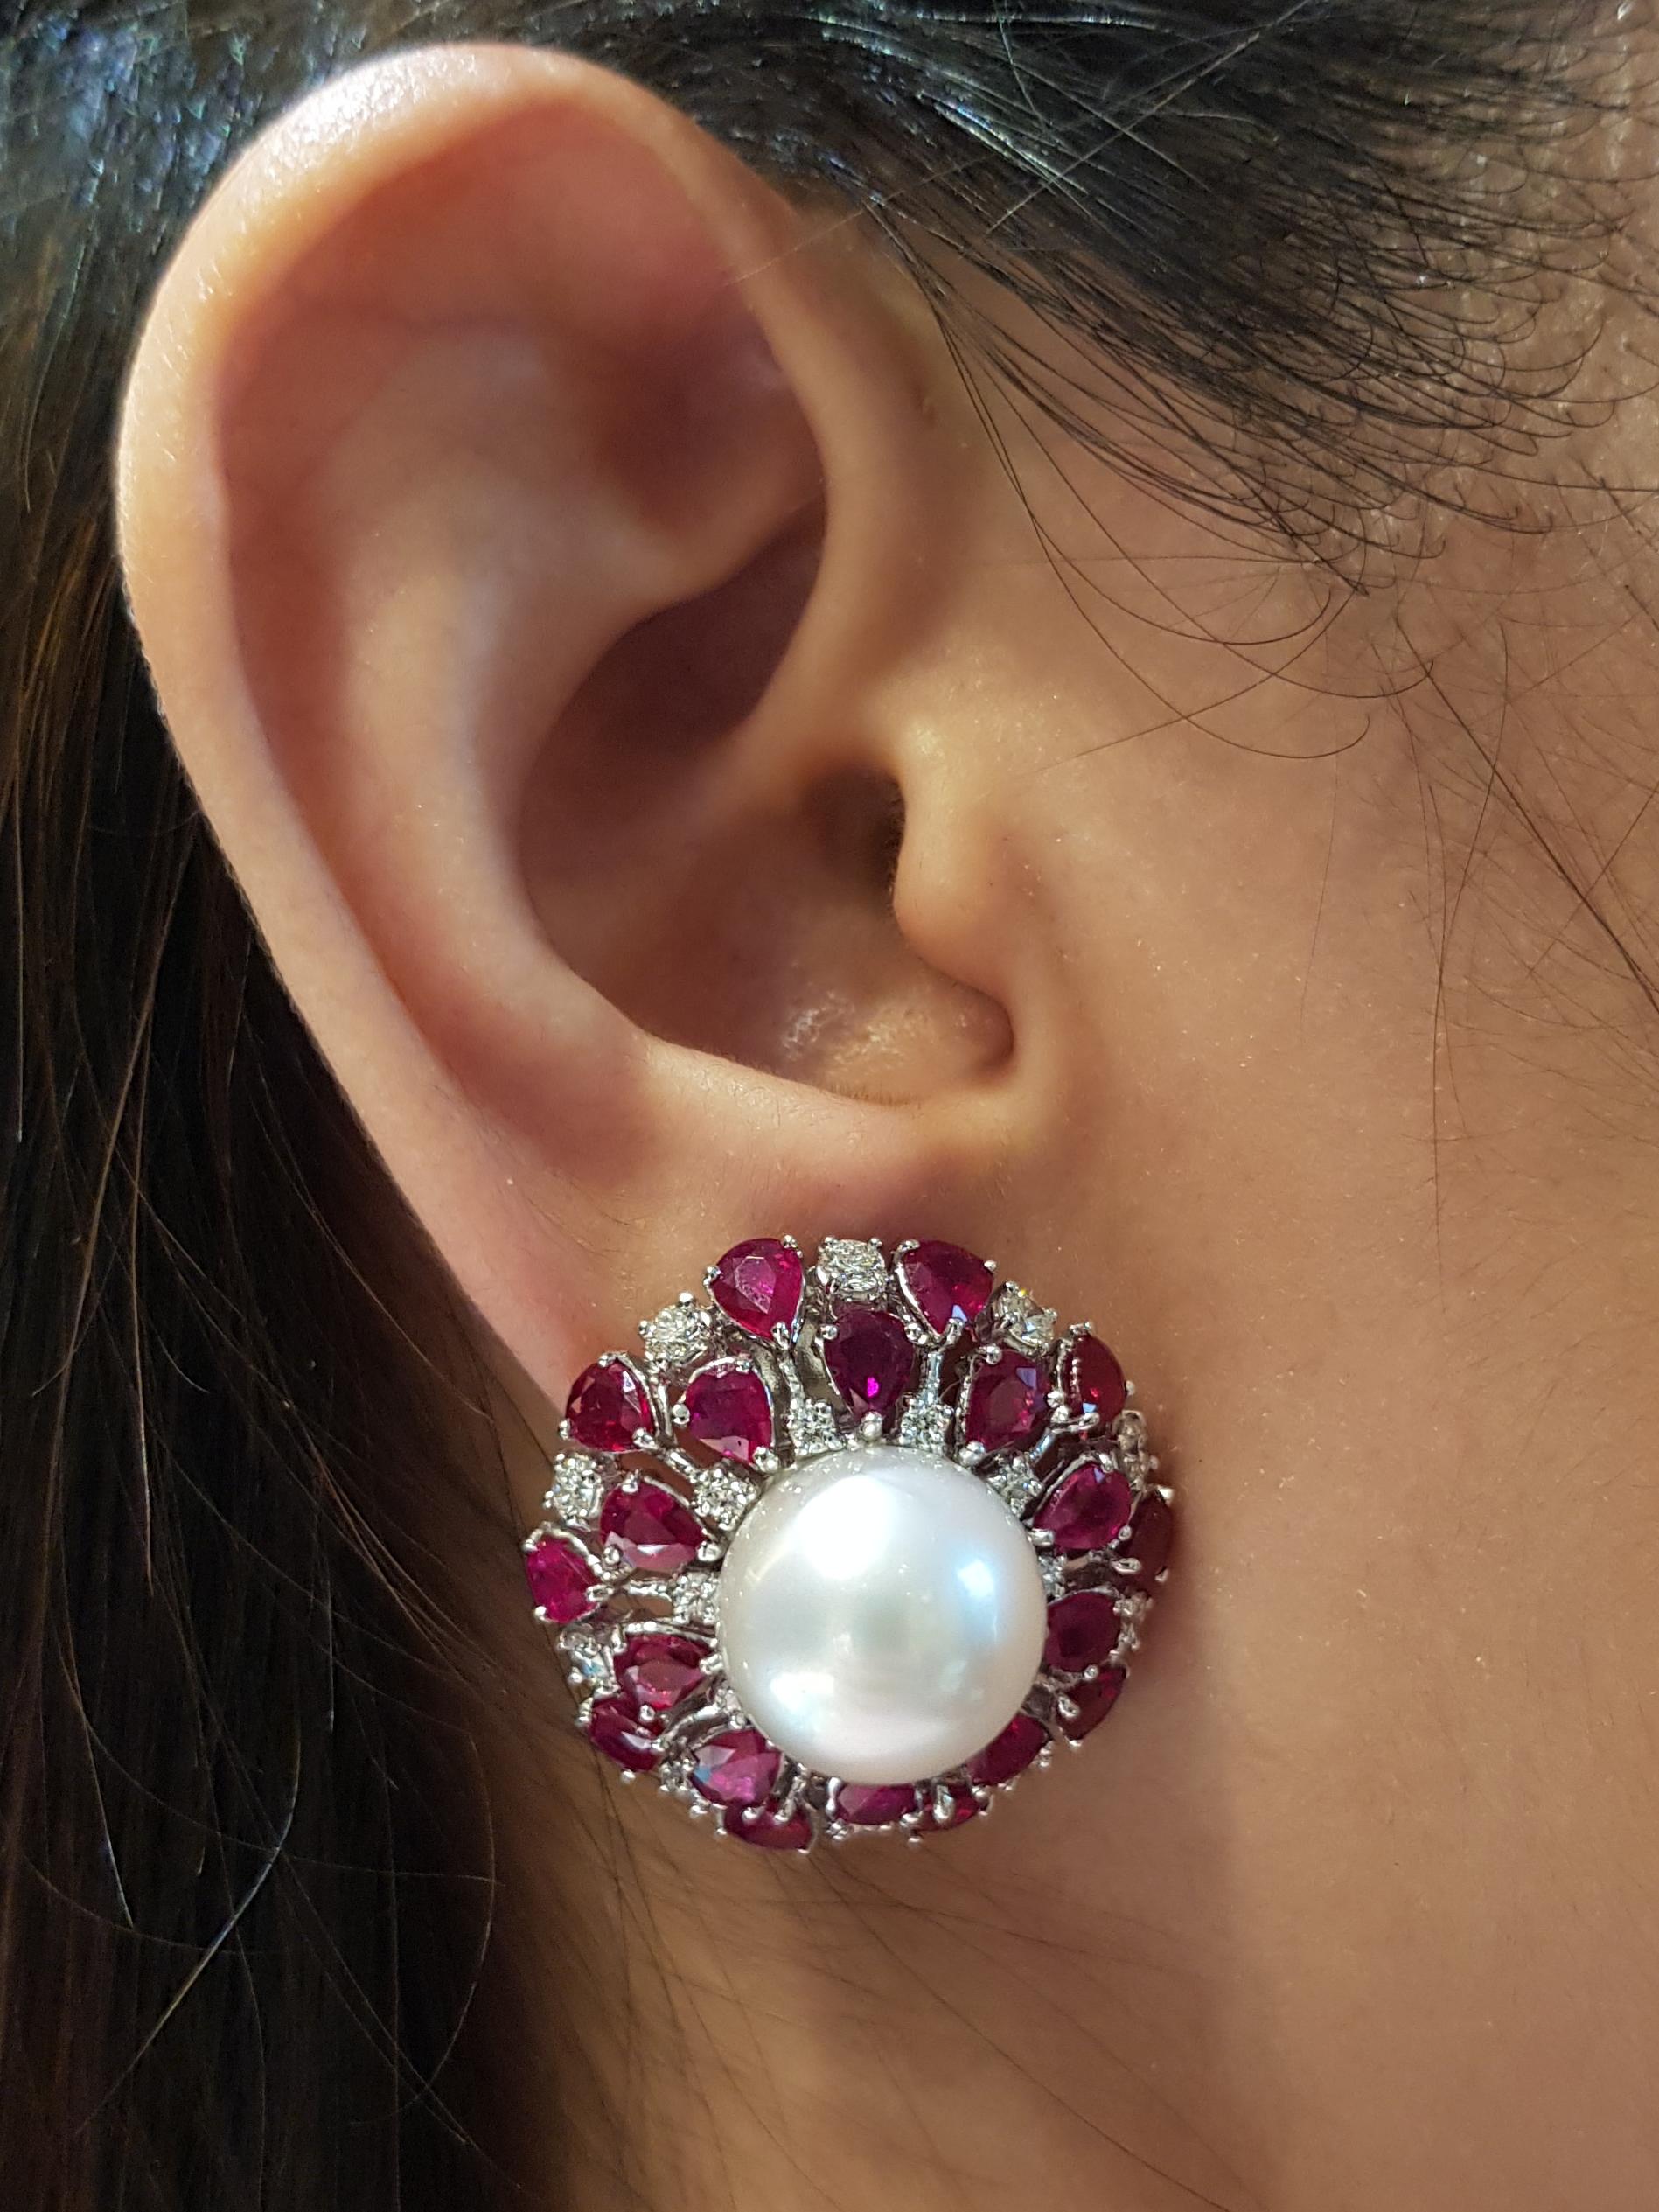 Boucles d'oreilles composées d'une perle des mers du Sud, d'un rubis (8,0 carats) et d'un diamant (1,30 carat), le tout dans une monture en or blanc 18 carats.

Largeur : 2,6 cm 
Longueur :  2.6 cm
Poids total : 24,46 grammes

